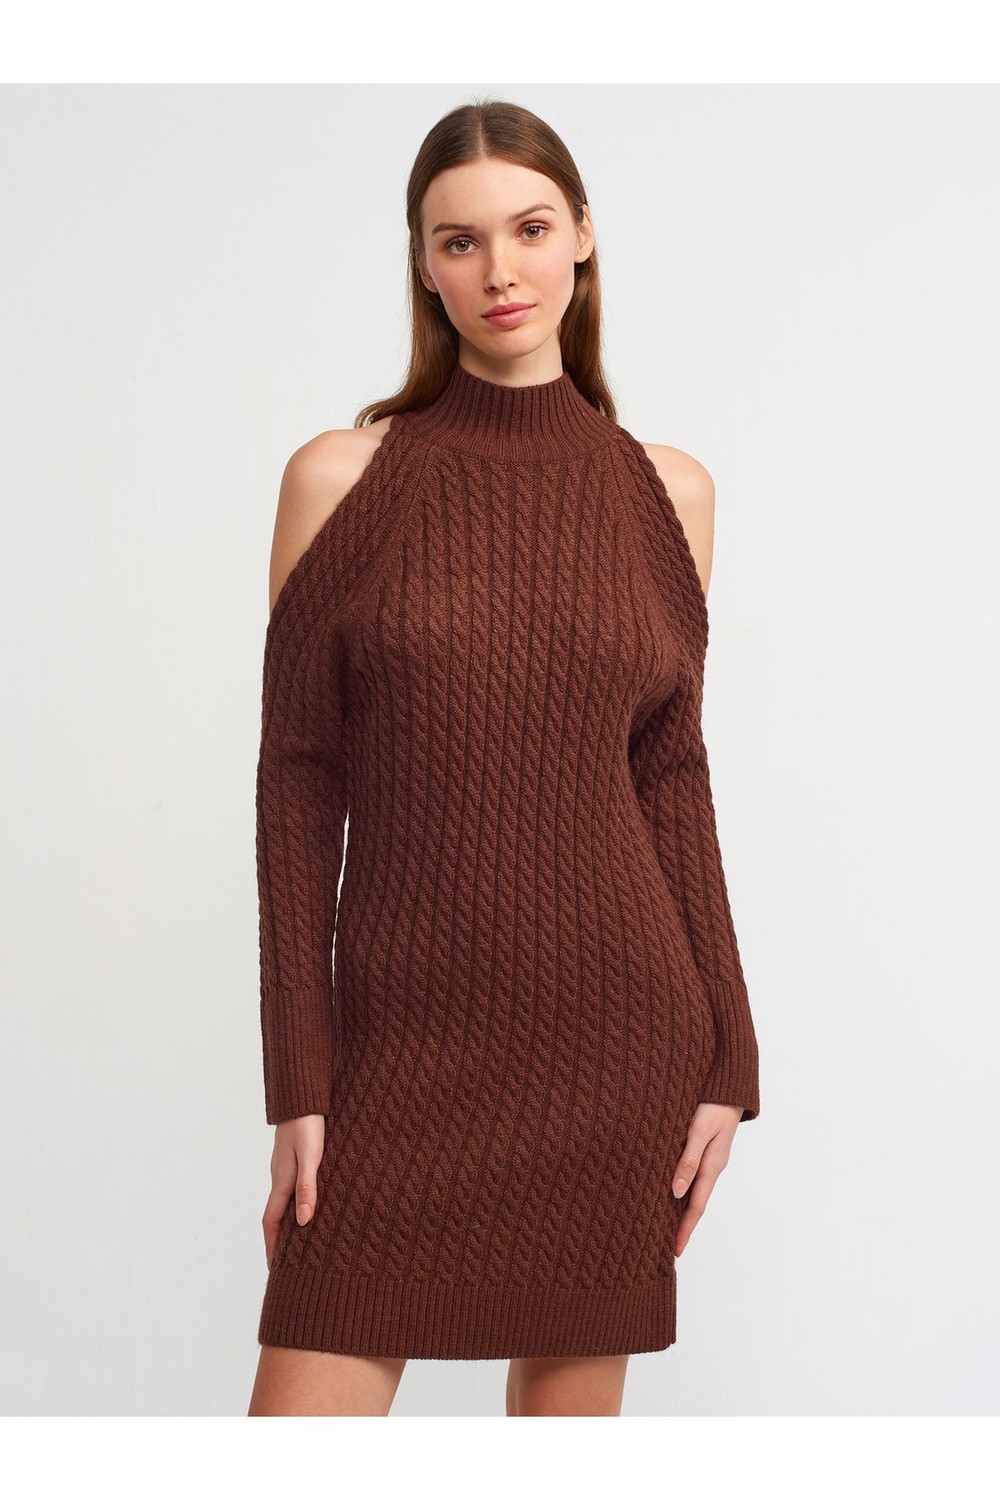 Dilvin 90131 Half Turtleneck Sweater Dress-brown with Open Shoulders.